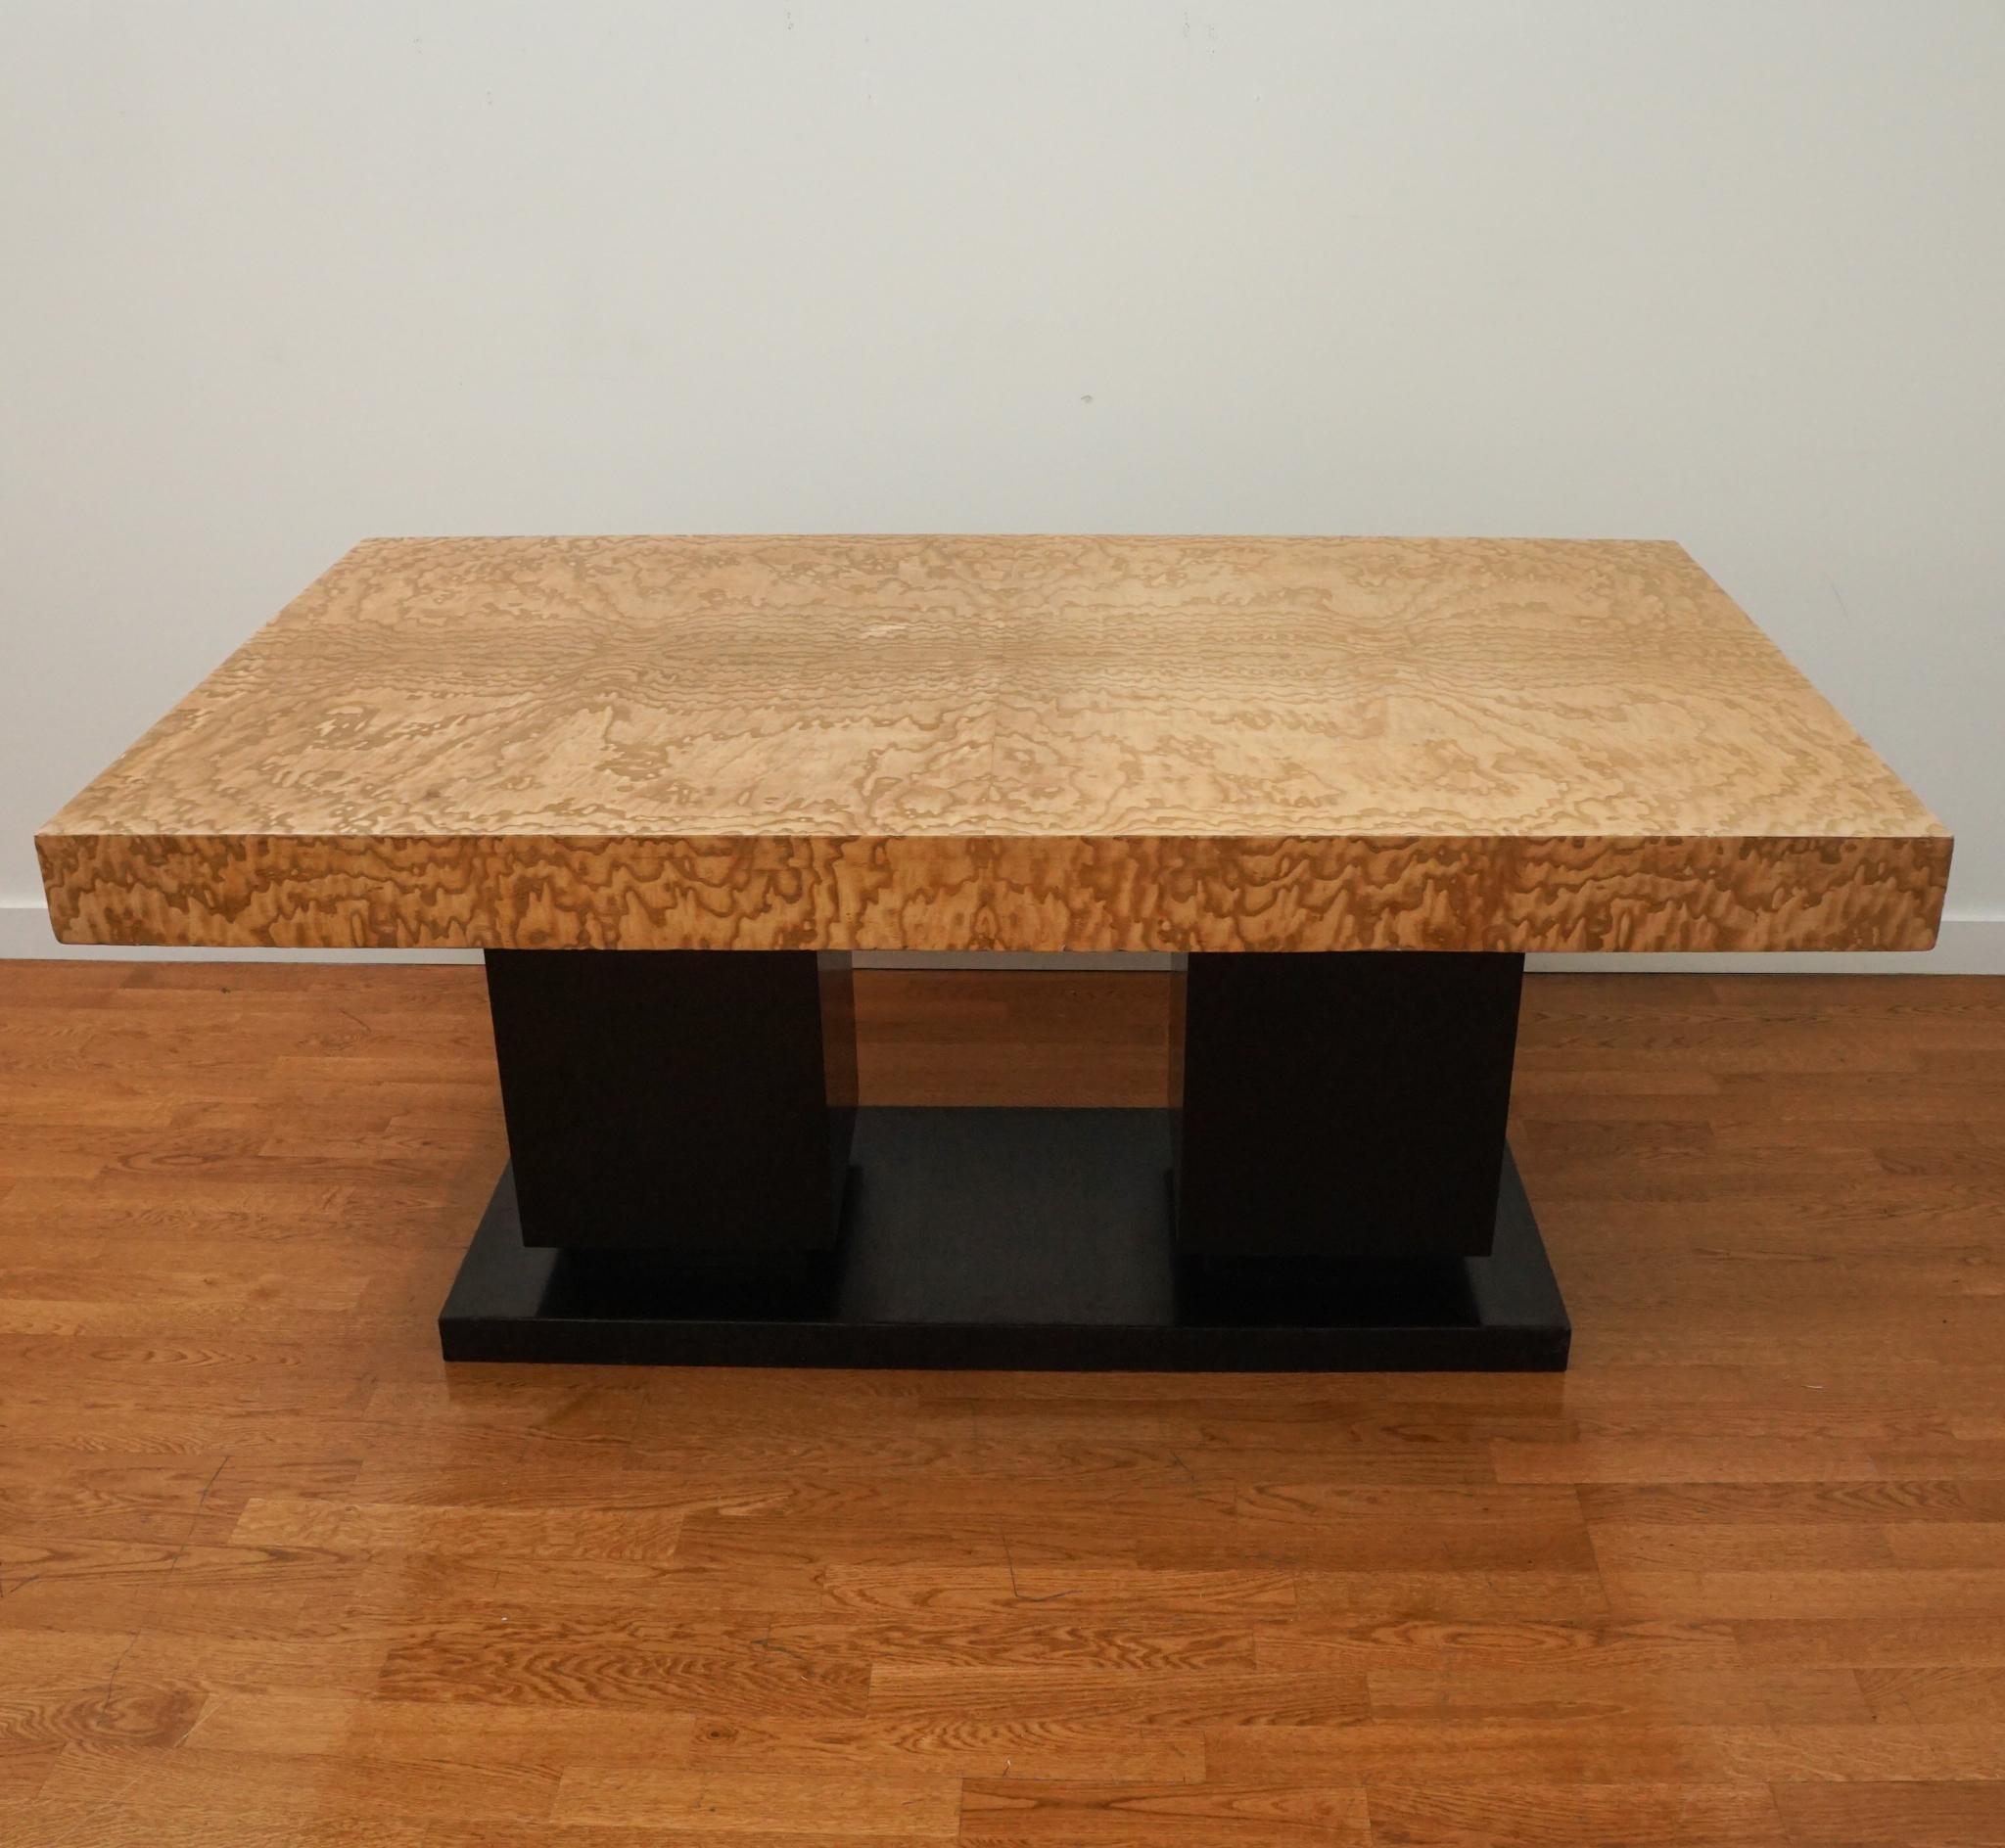 Cette exquise table de salle à manger Art déco, originaire de France et datant des années 1930, présente un plateau en ronce de frêne soutenu par deux socles carrés reposant sur une base rectangulaire surélevée. La table a des feuilles de 28